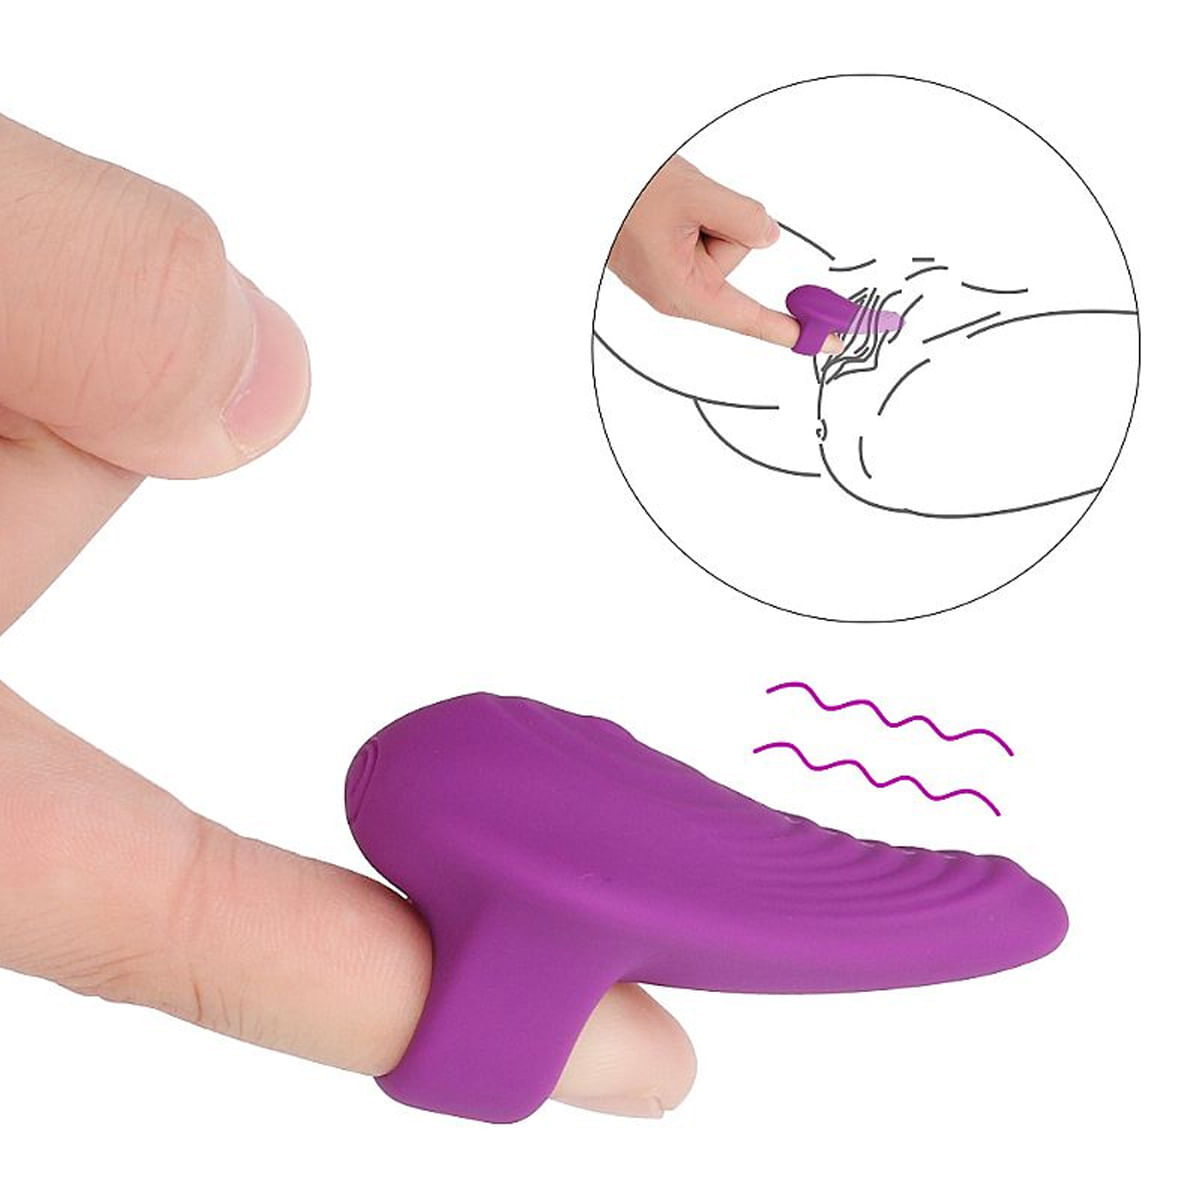 S-Hande Finger Dedeira Estimuladora com Cápsula Vibratória Miss Collection